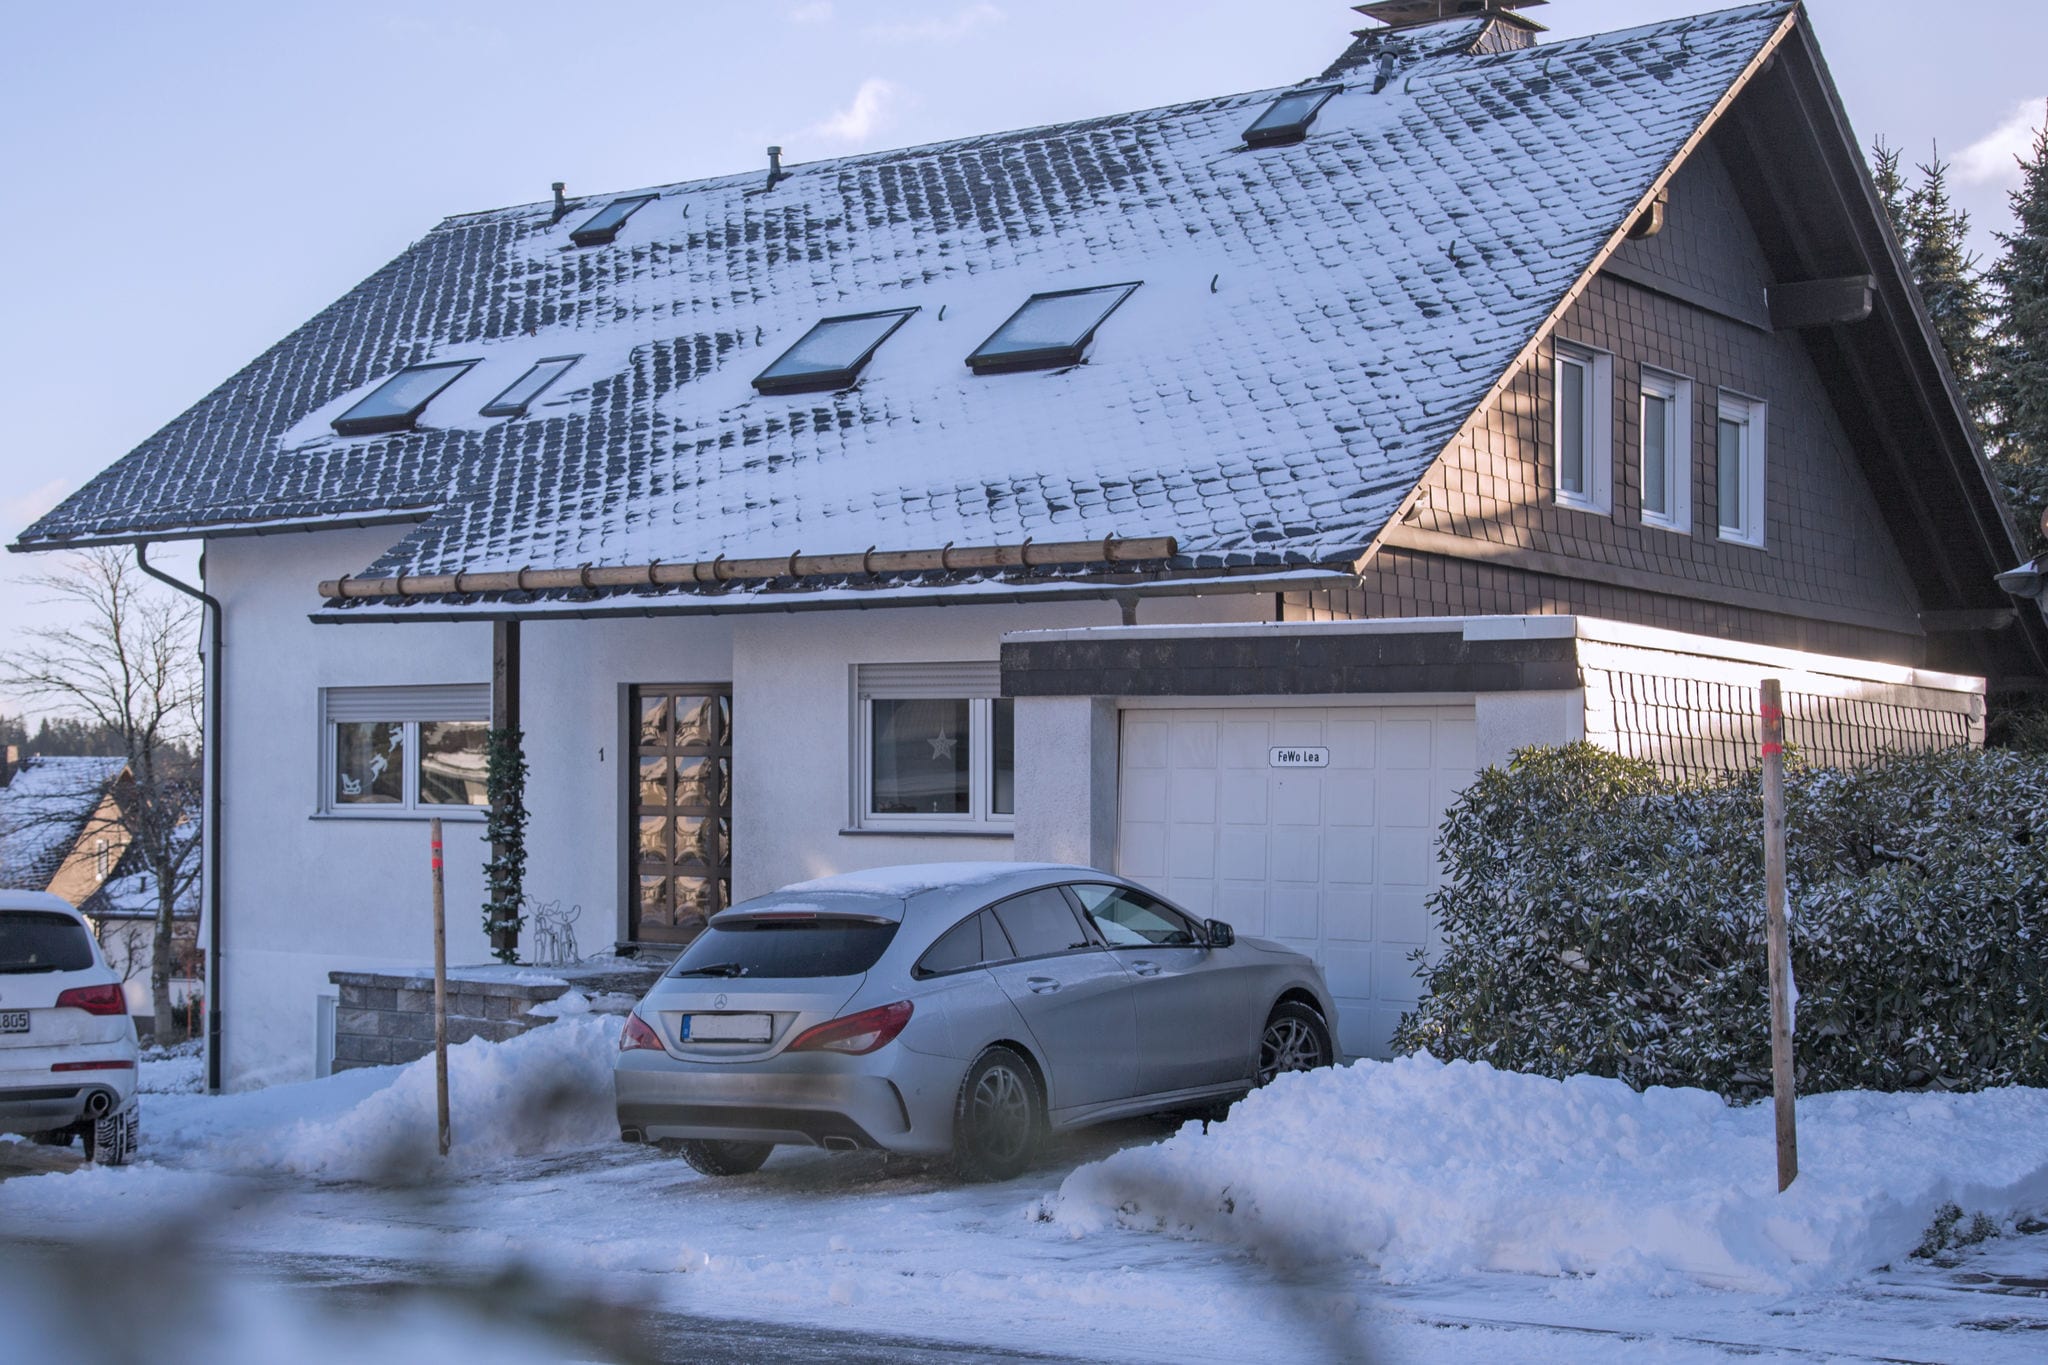 Gemütliche Ferienwohnung mit eigener Terrasse in Altastenberg